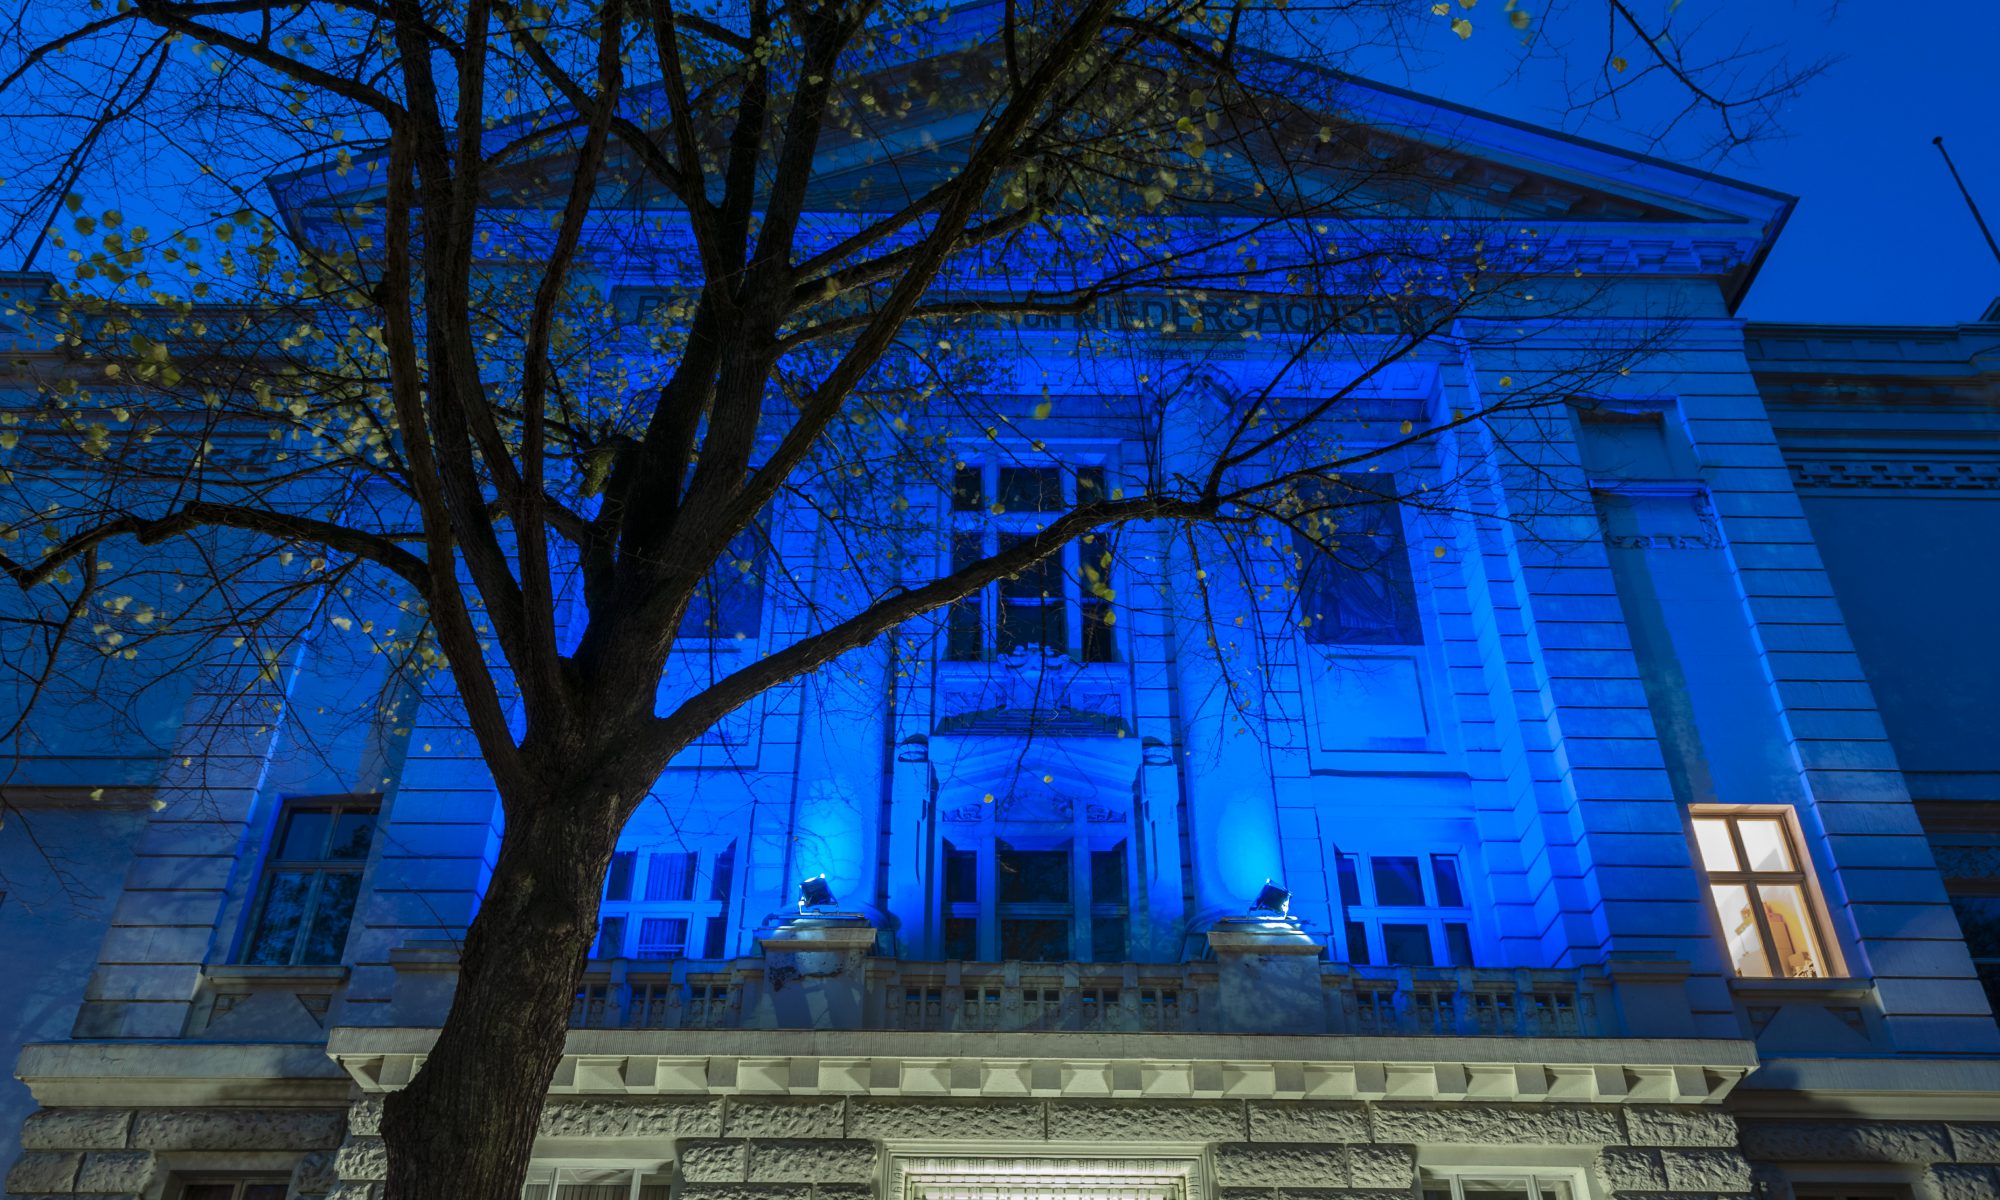 Foto vom Logenhaus in Hamburg, nachts blau angestrahlt